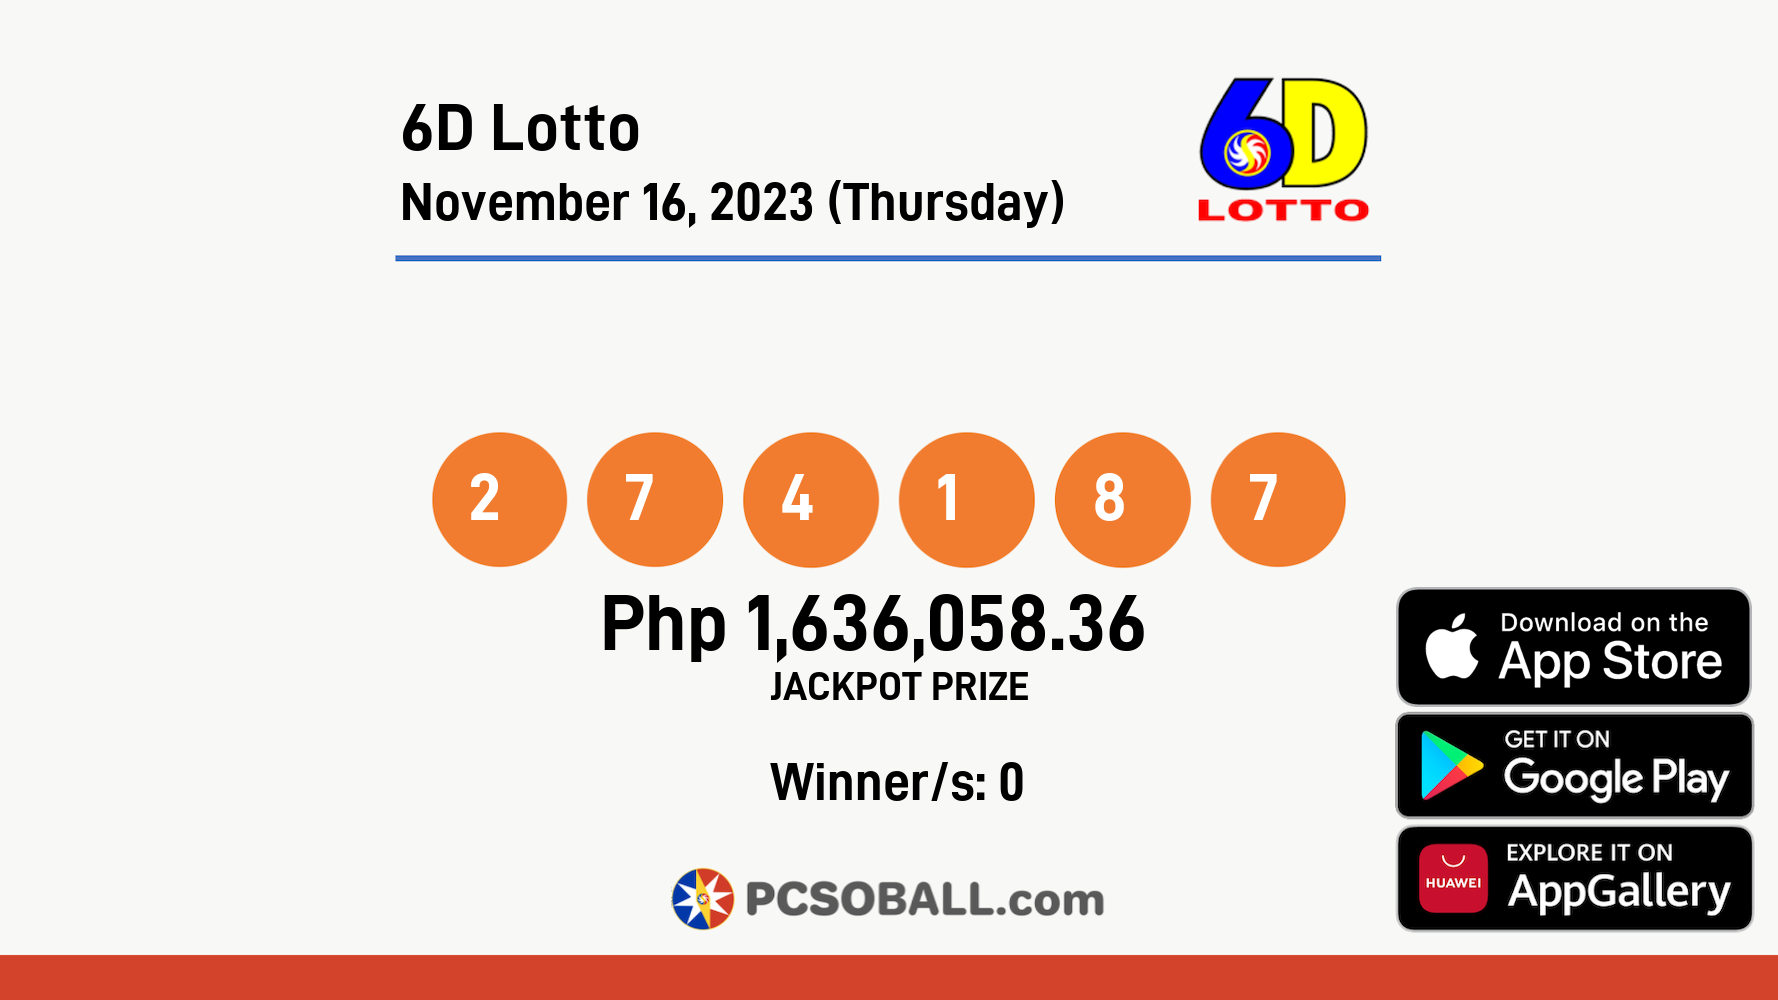 6D Lotto November 16, 2023 (Thursday) Result